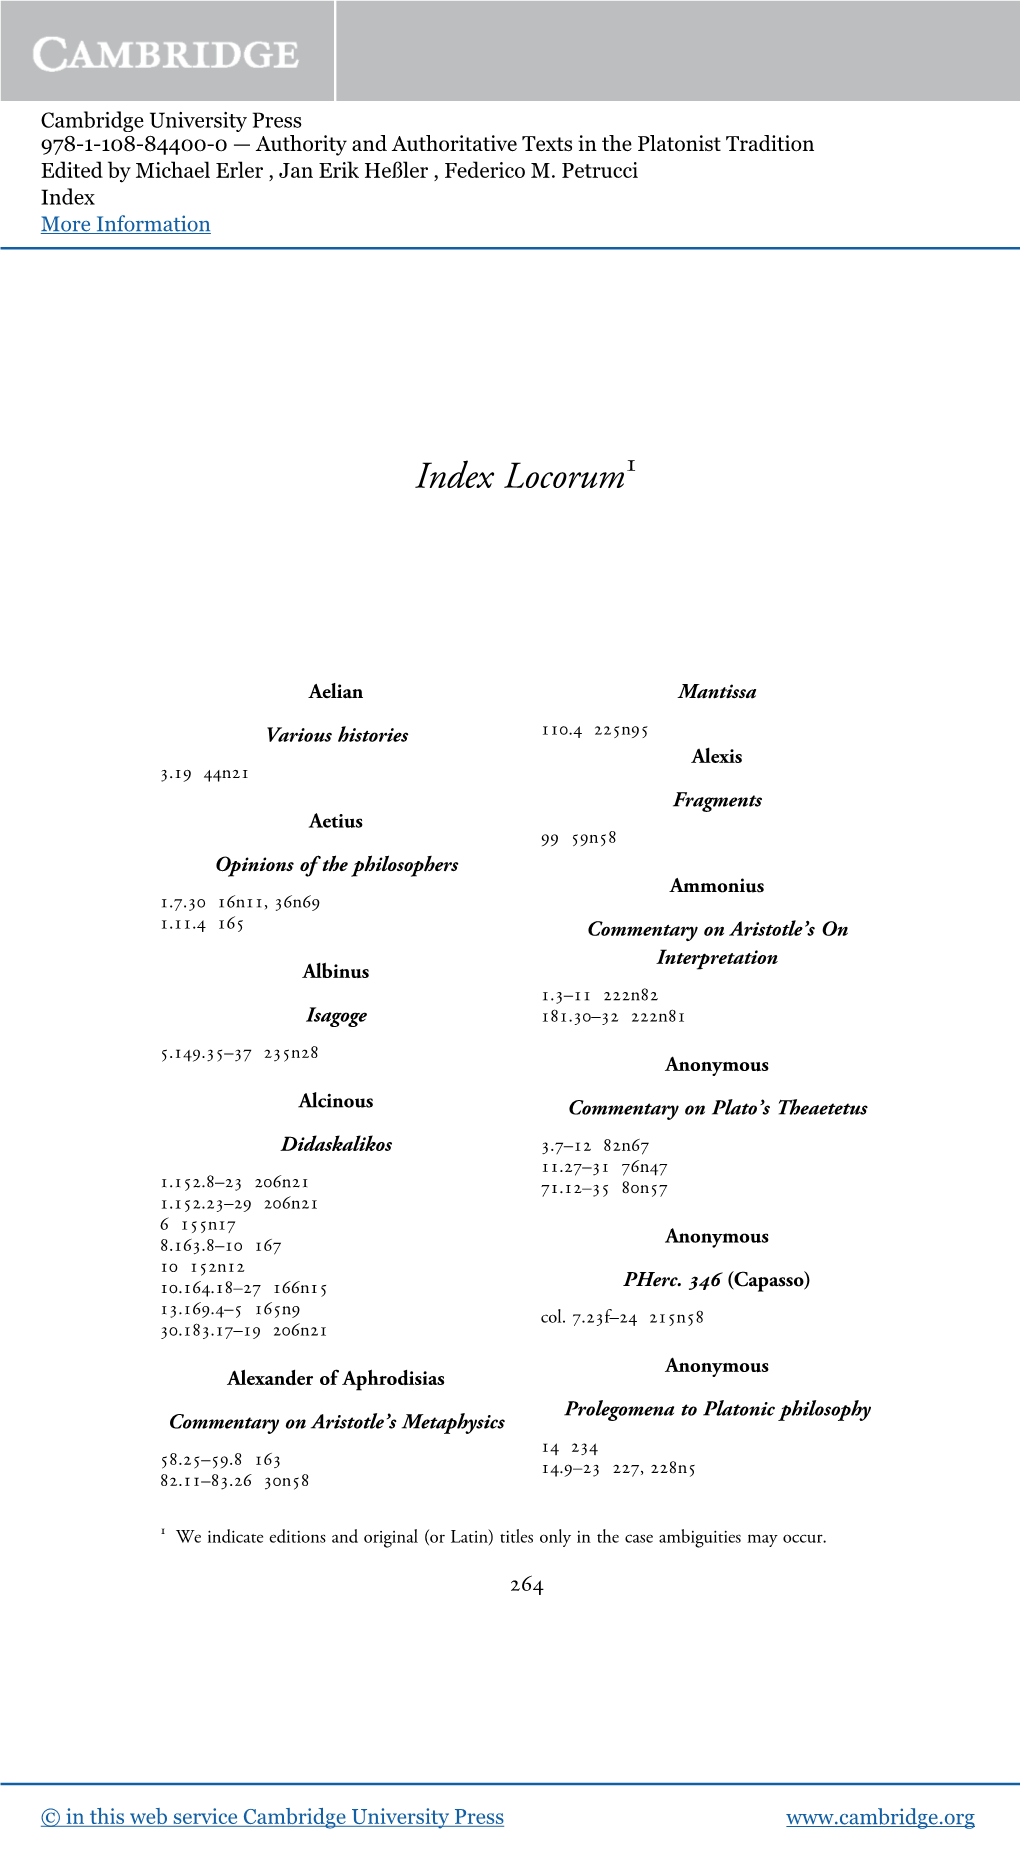 Index Locorum1